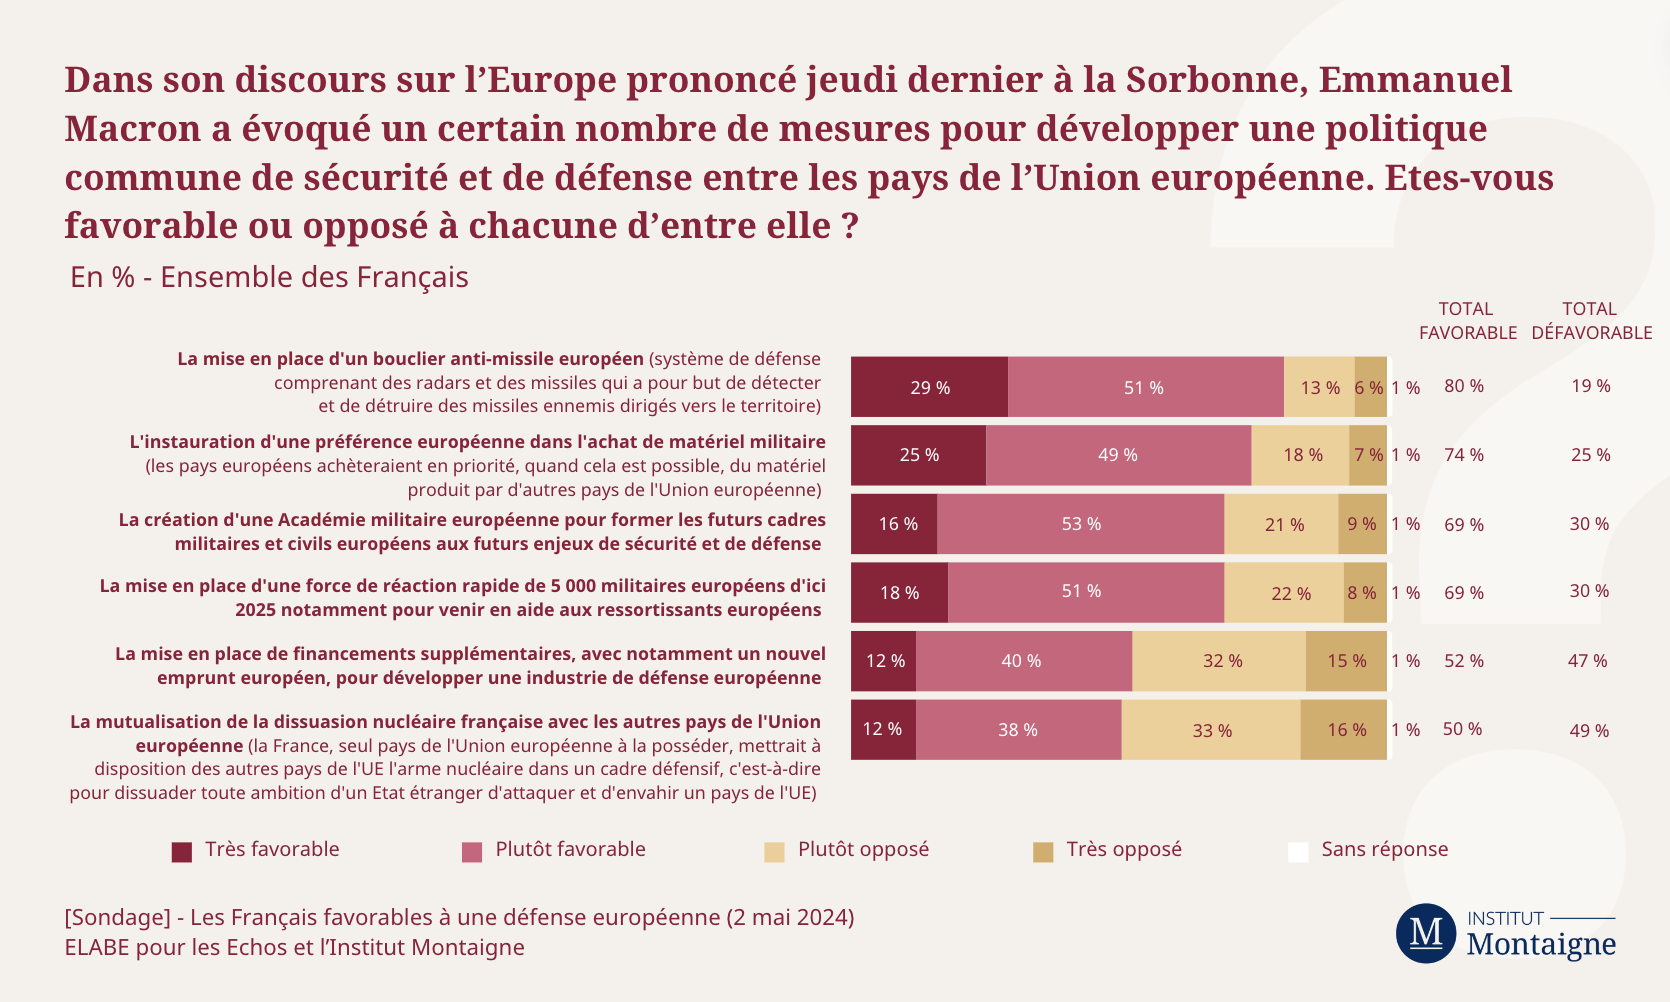 sondage-les-francais-favorables-une-defense-europeenne-4